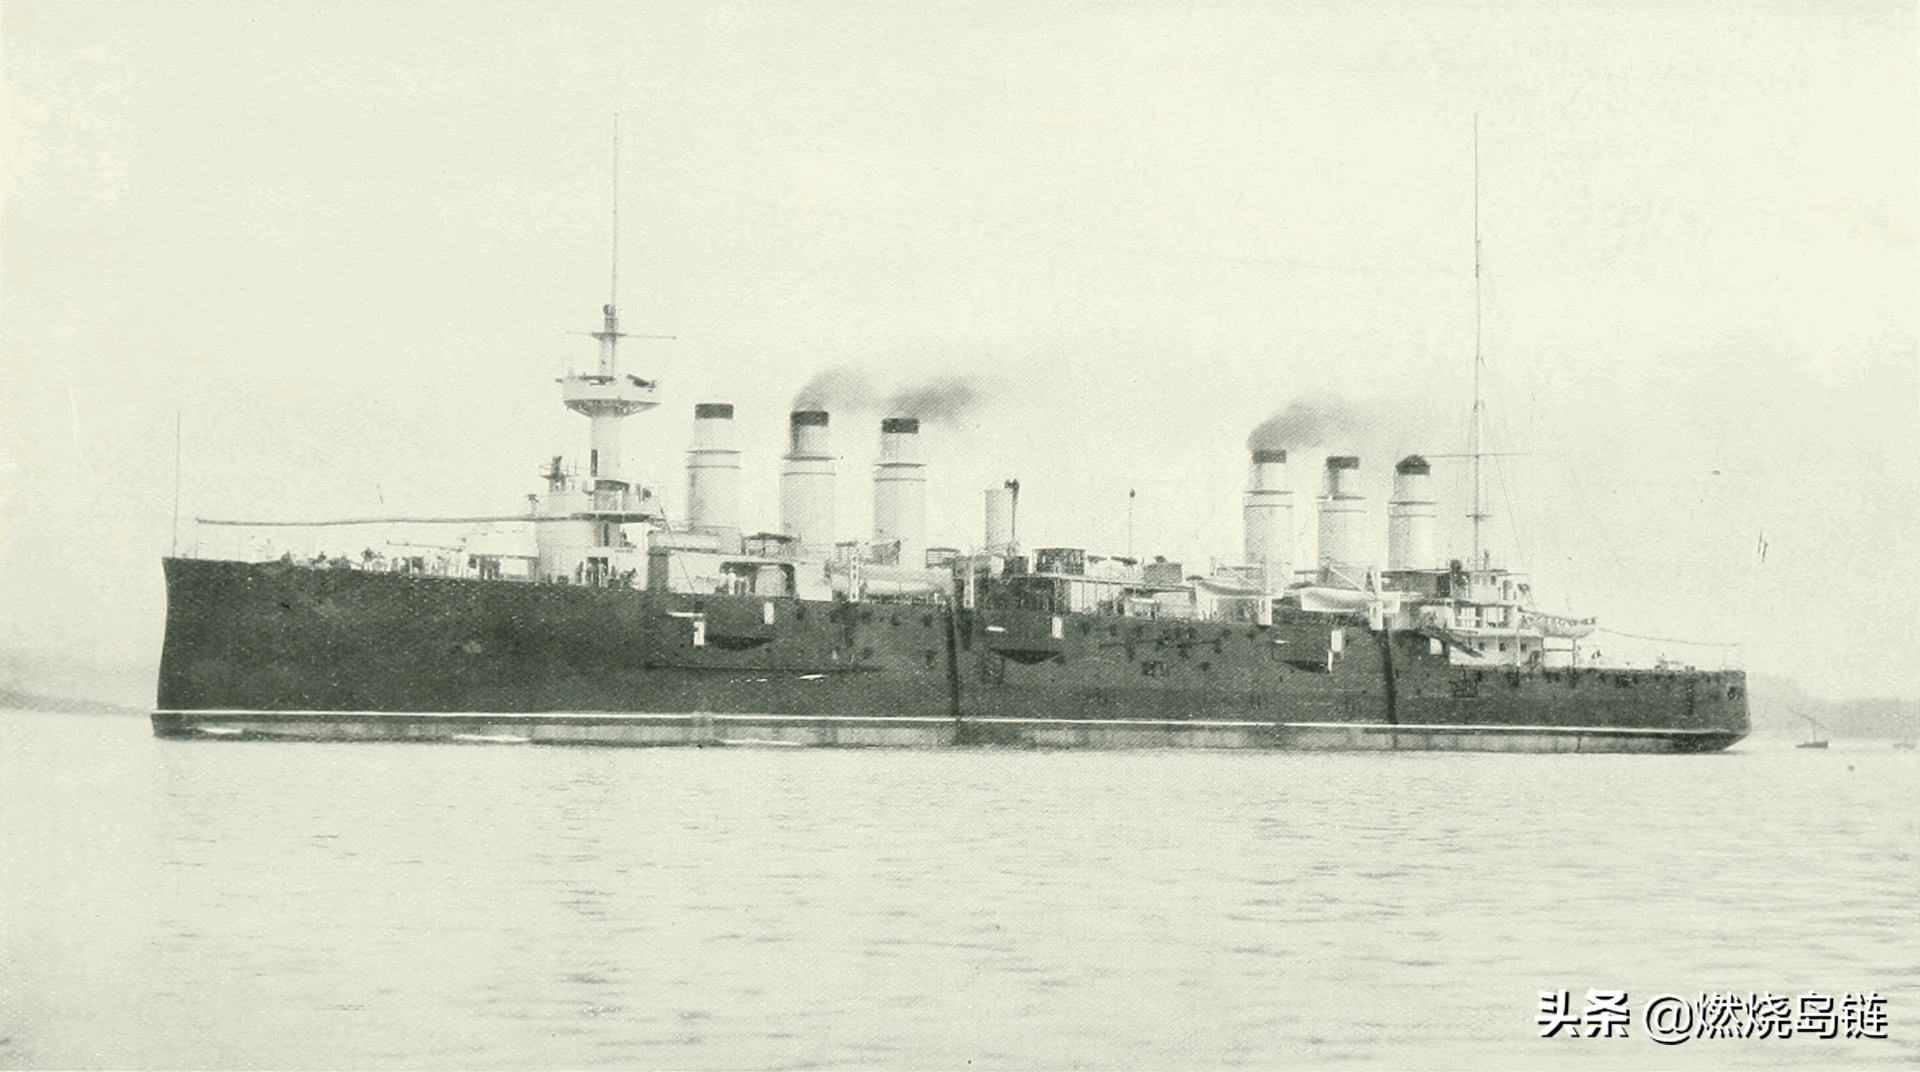 曾经是法国海军最强大巡洋舰的"贞德"号装甲巡洋舰